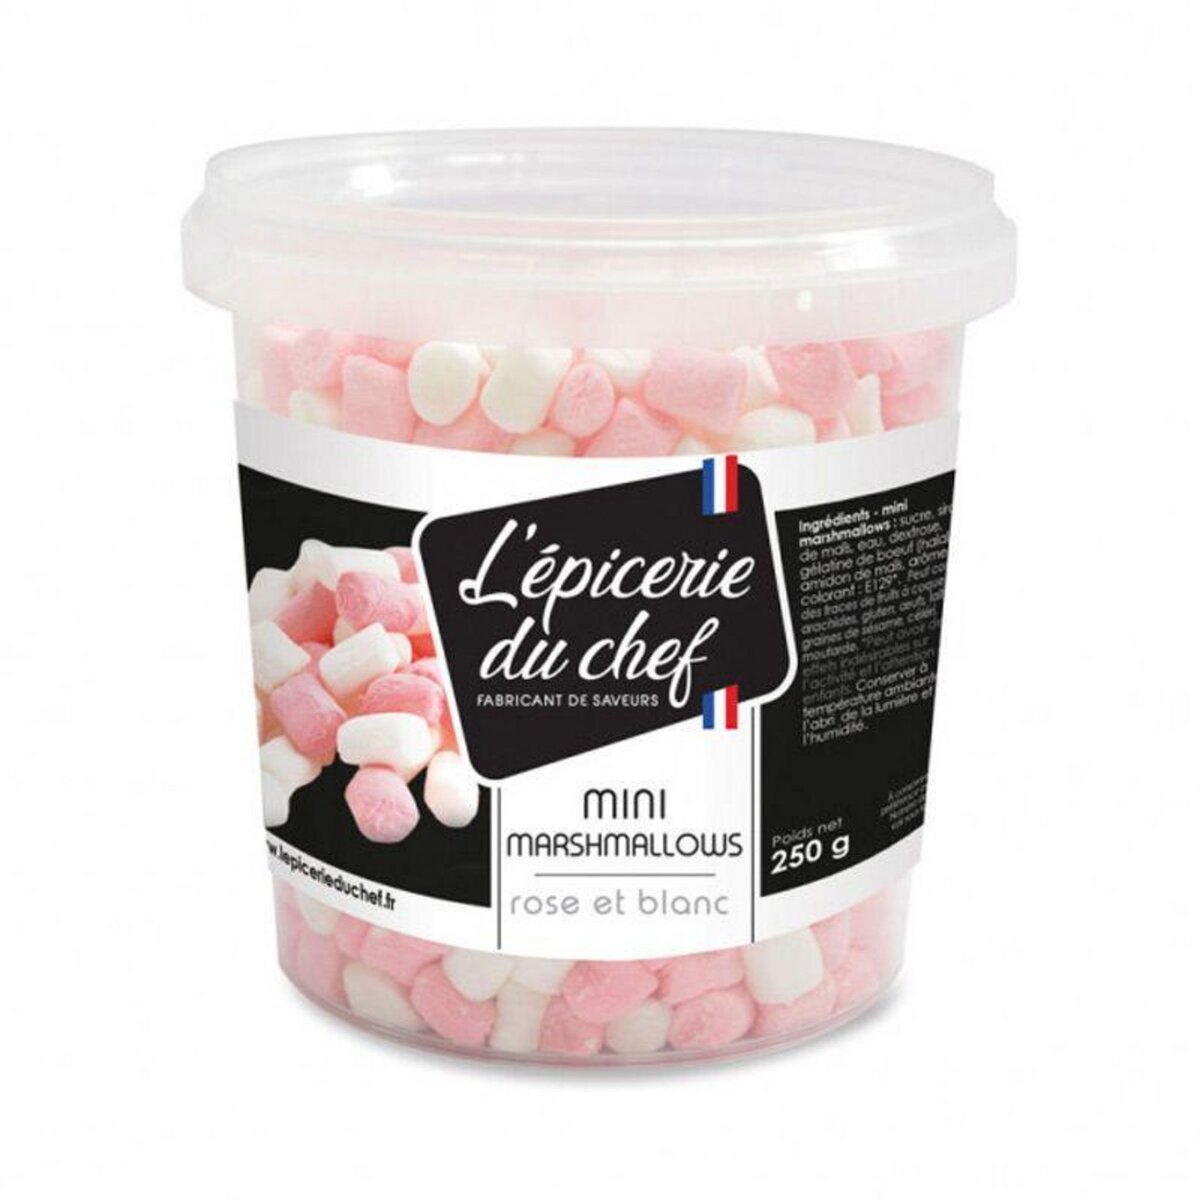  Mini marshmallows 250 g